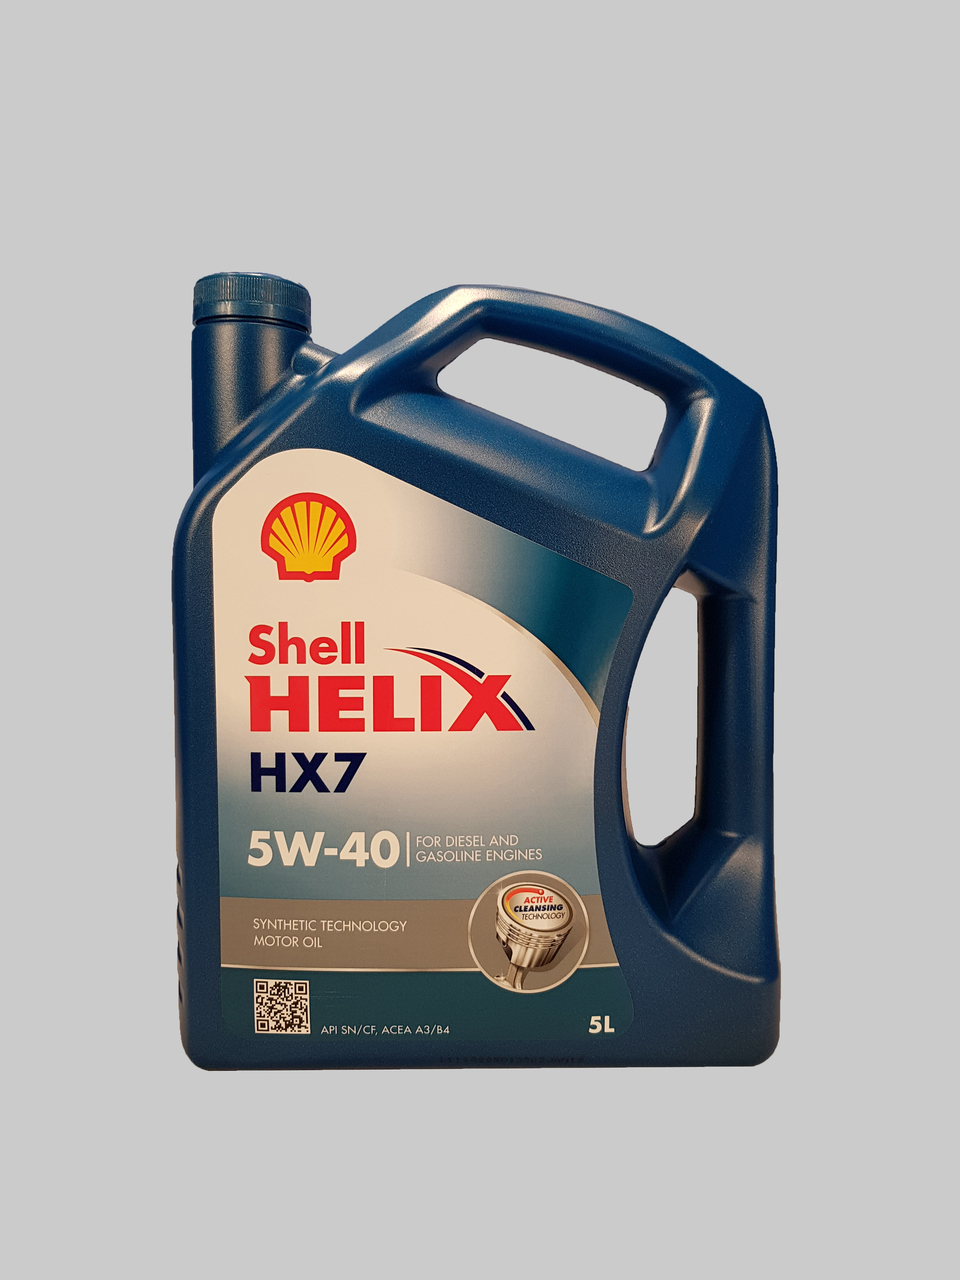 Shell Helix HX7 5W-40 5 Liter